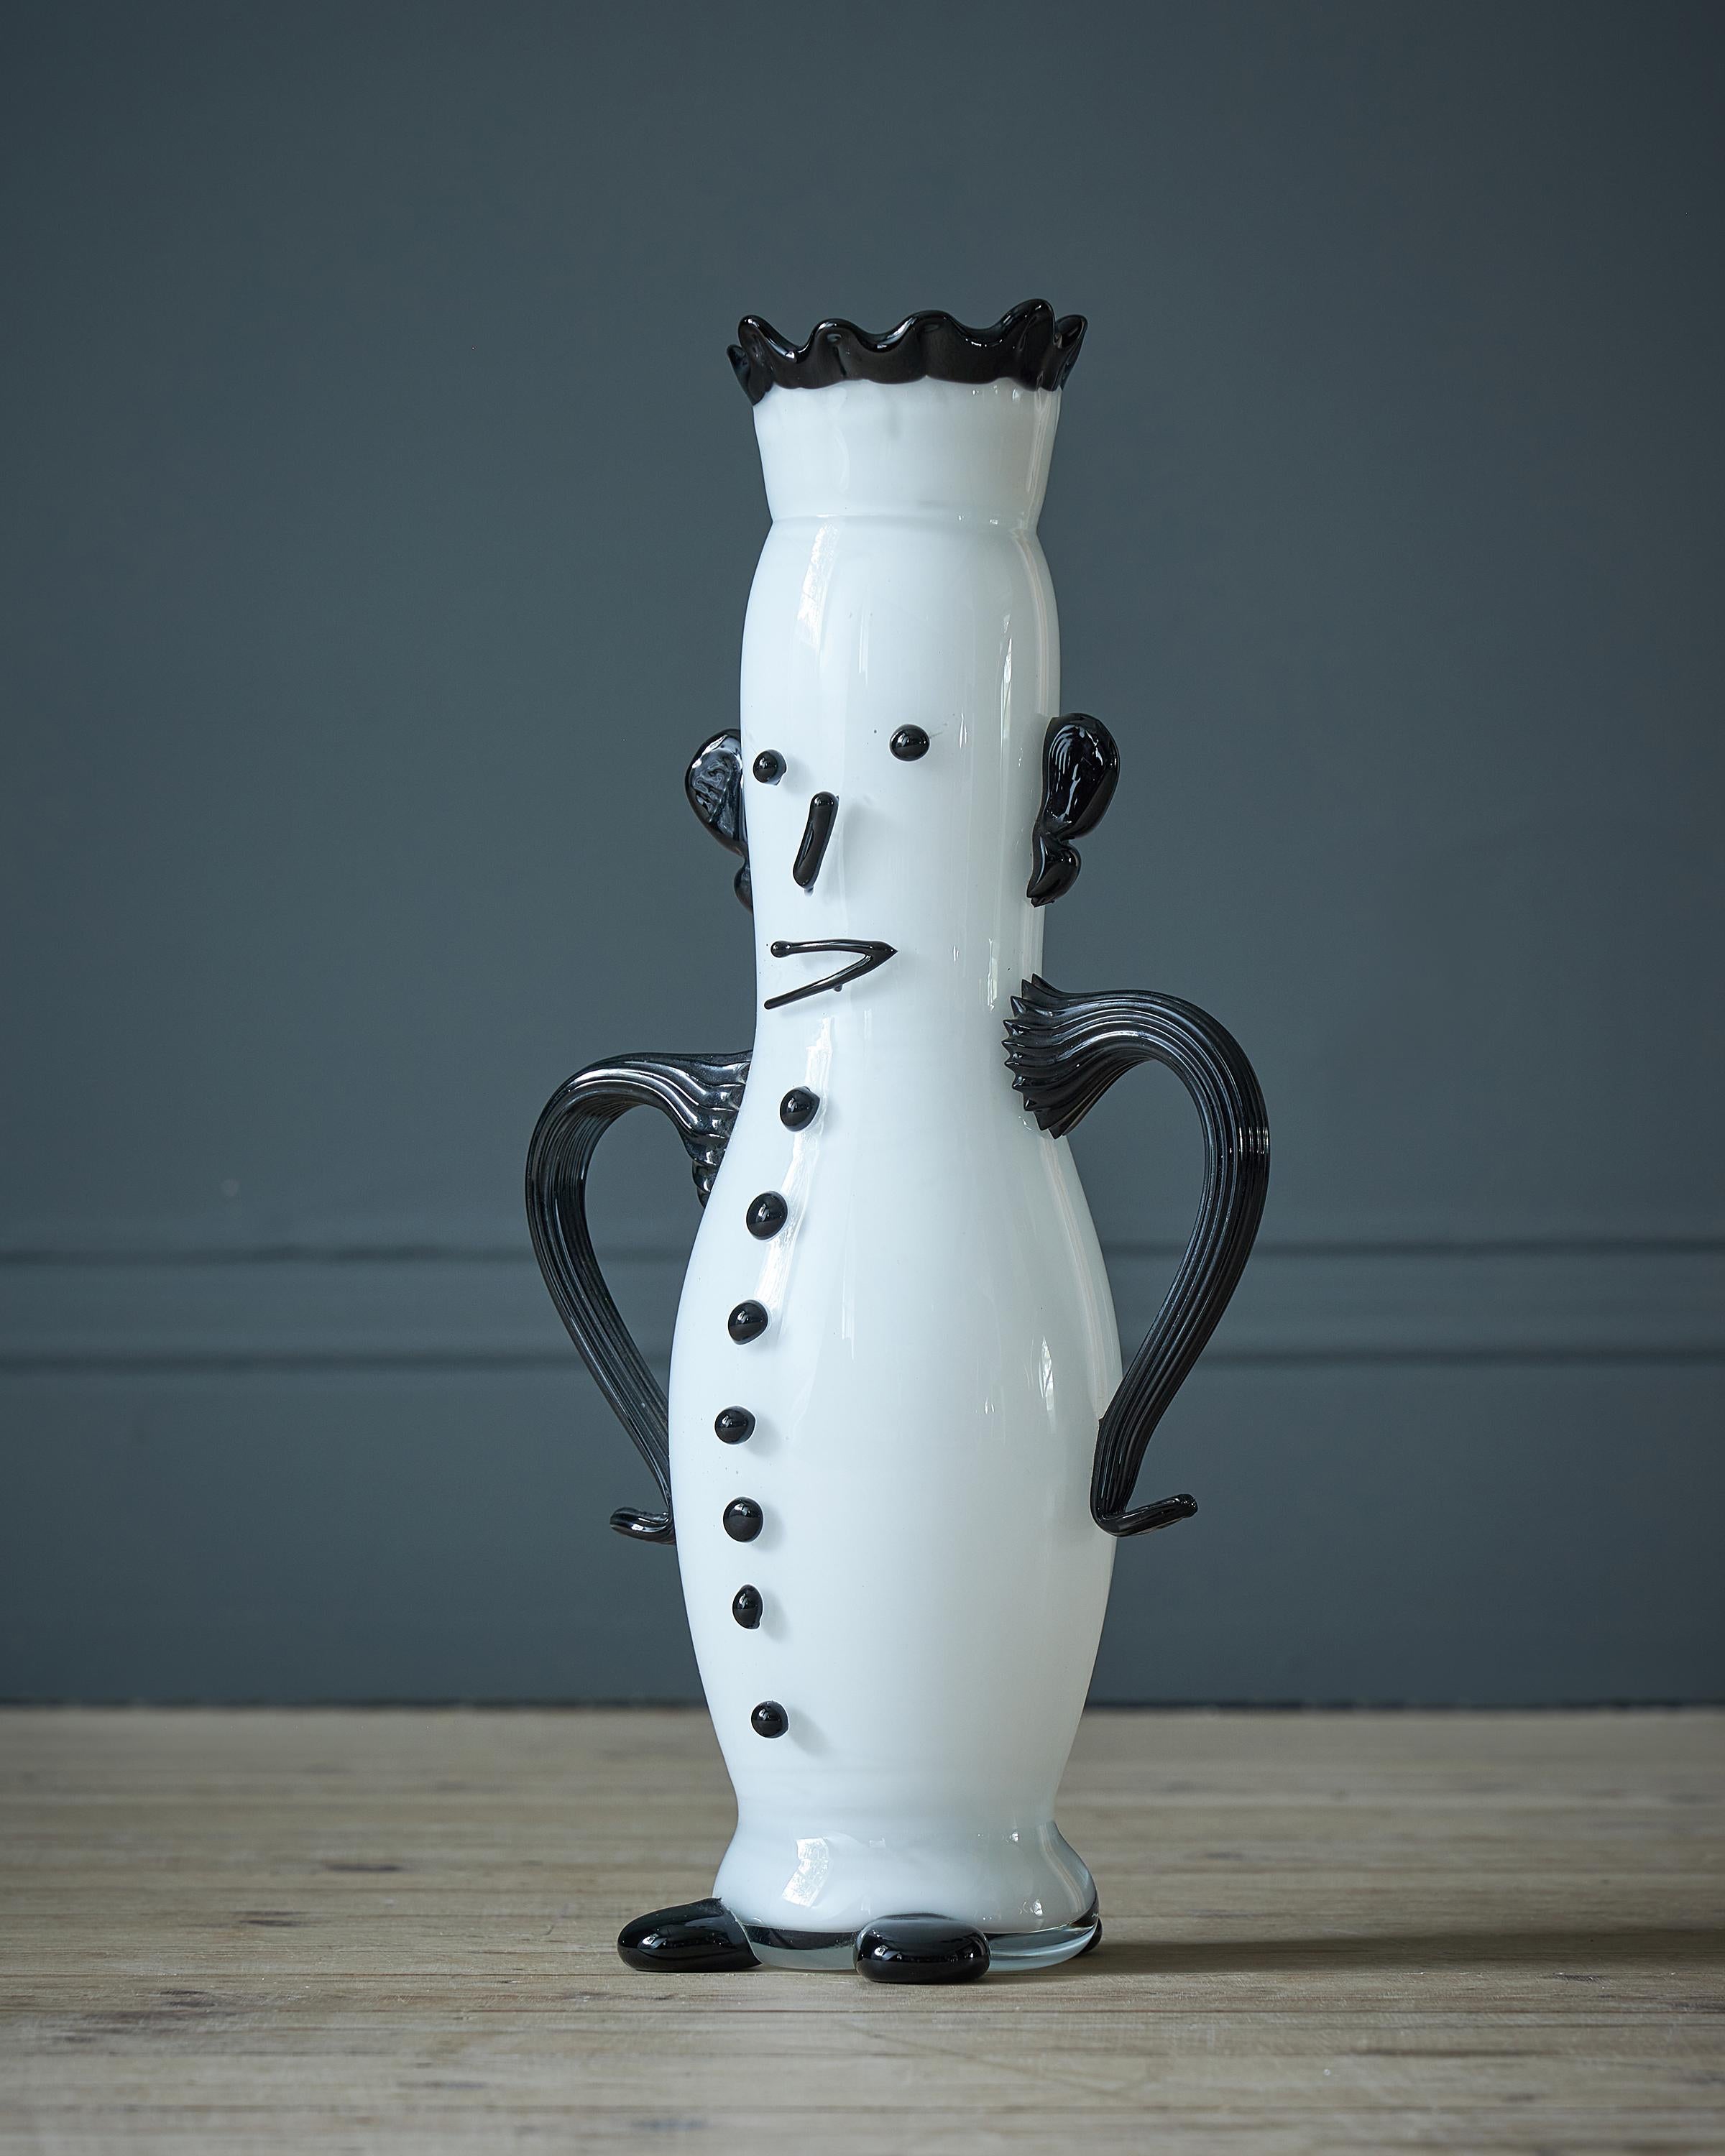 Le Porteur d'eau, un vase figuratif en verre conçu par Pablo Picasso, fabriqué par Aldo Bon, 1955, verre blanc avec détails noirs appliqués, gravé Aldo Bon Murano italien sur un pied et Picasso sur l'autre pied.